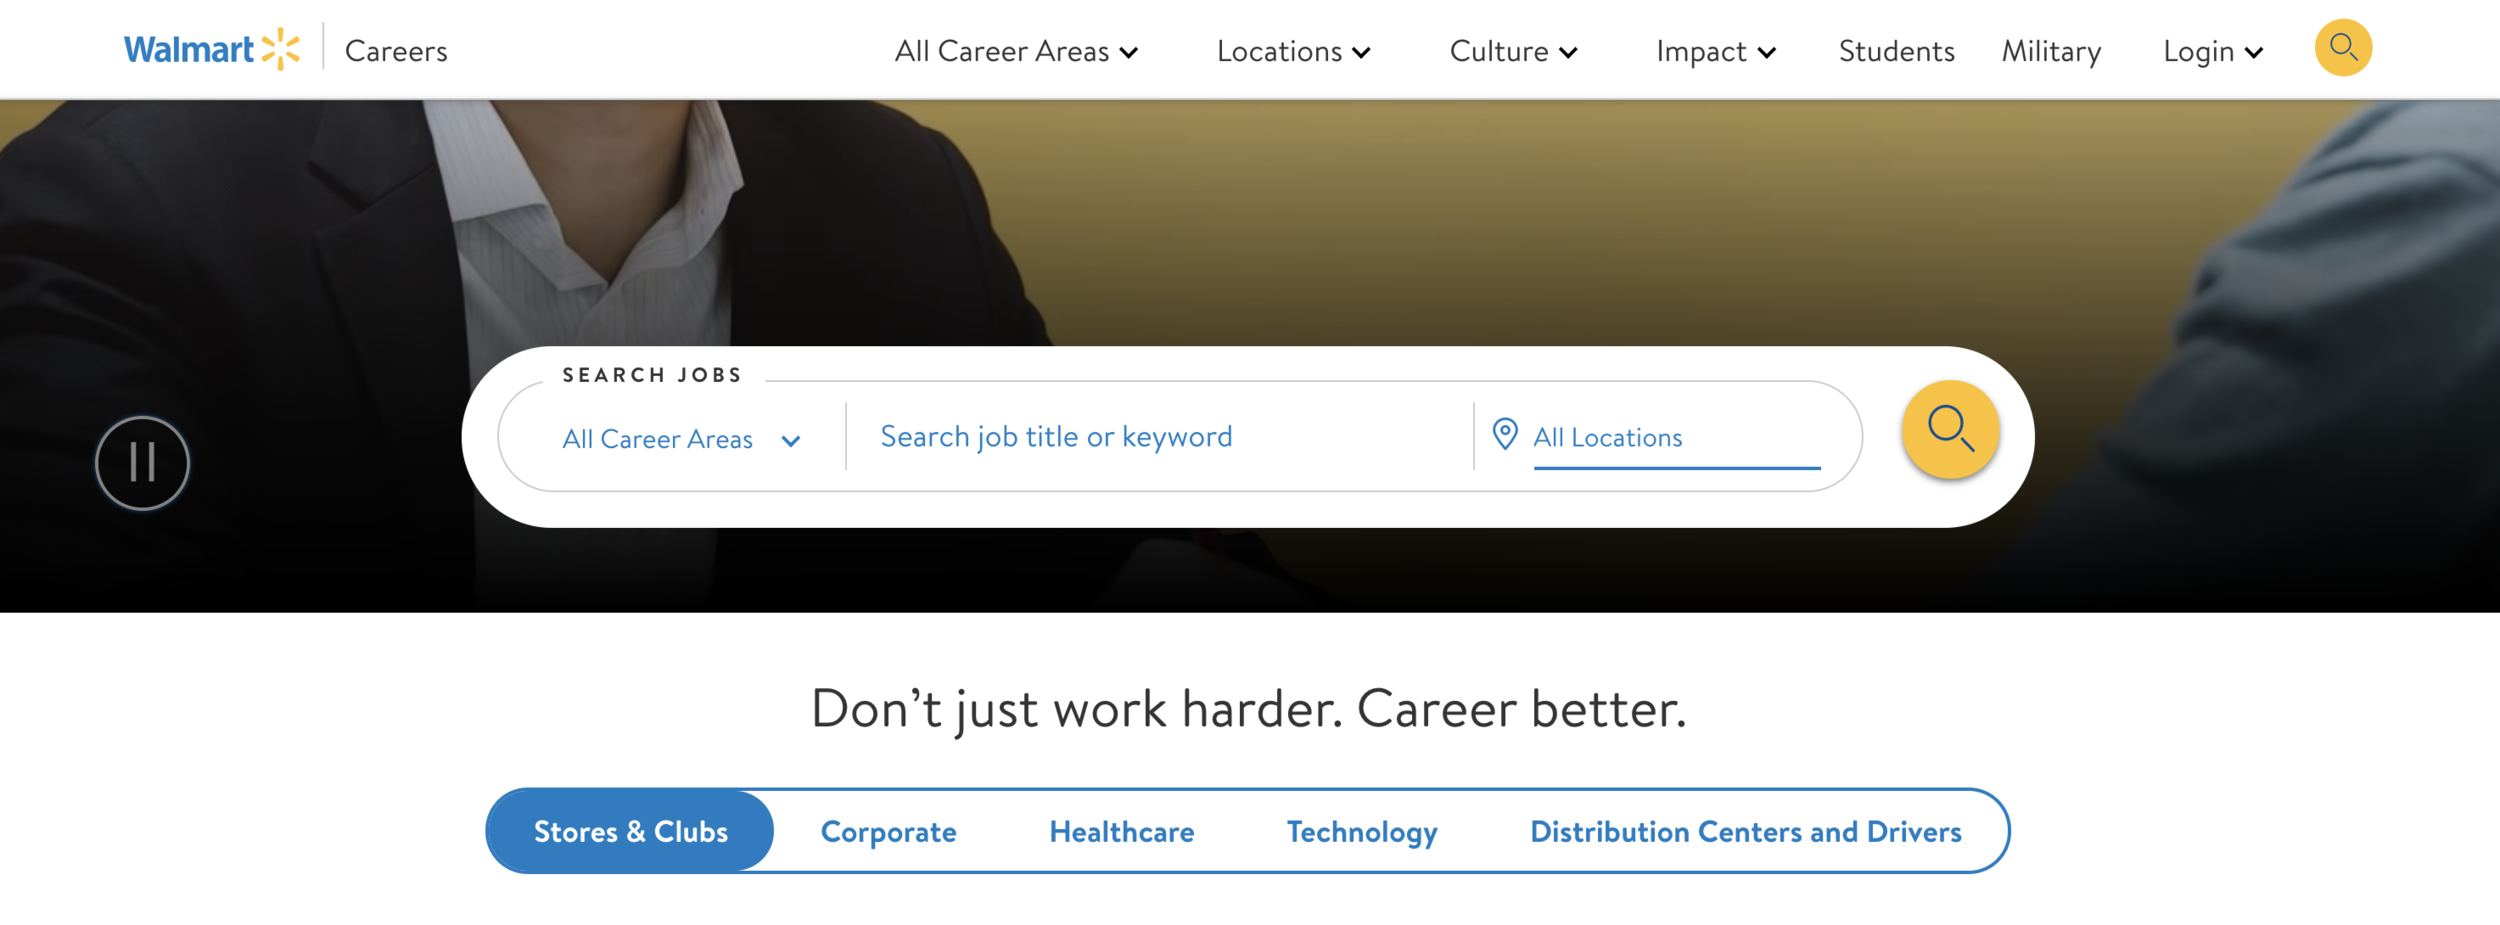 Walmart Careers — Refreshed webpage